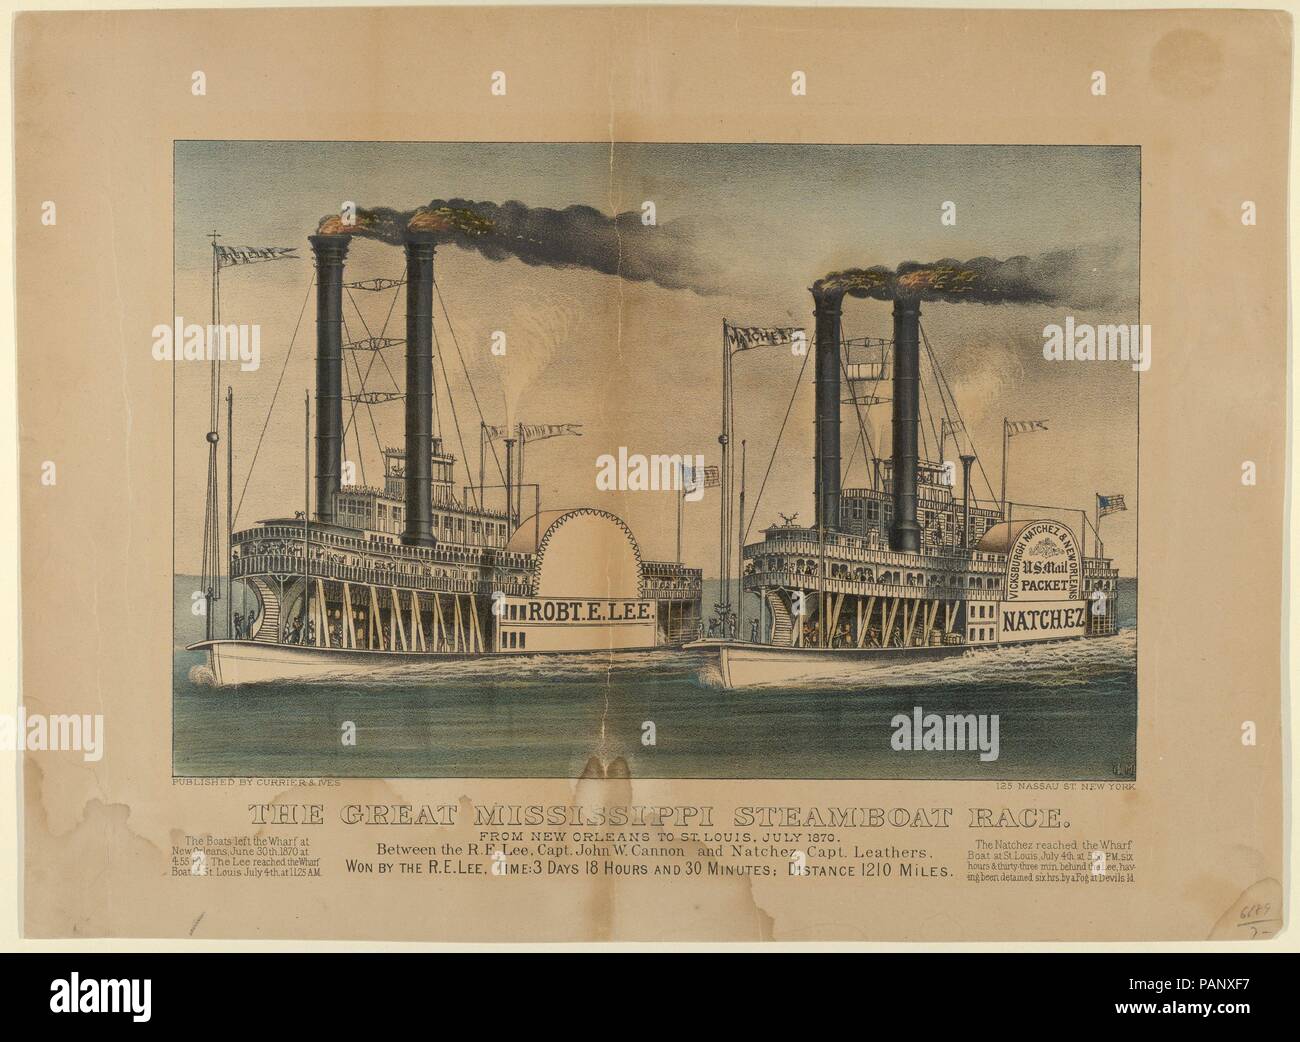 Il grande Mississippi Steamboat Race-From New Orleans a St Louis, luglio 1870-tra la R.E. Lee, il capitano John W. Cannon e Natchez capitano Leathers-Won dalla R.E. Lee, Tempo: 3 giorni 18 ore e 30 minuti; Distanza 1210 Miglia. Dimensioni: Immagine: 8 1/4 × 12 9/16 in. (20,9 × 31,9 cm) foglio: 12 1/16 × 16 3/8 in. (30,7 × 41,6 cm). Litografo: litografato e pubblicato da Currier & Ives (American, attivo a New York, 1857-1907). Data: 1872-74. Due riverboats, Robert E. Lee a sinistra e Natchez a destra, gara da sfondo a destra a sinistra in primo piano. Museo: Metropolitan Museum of Art Foto Stock